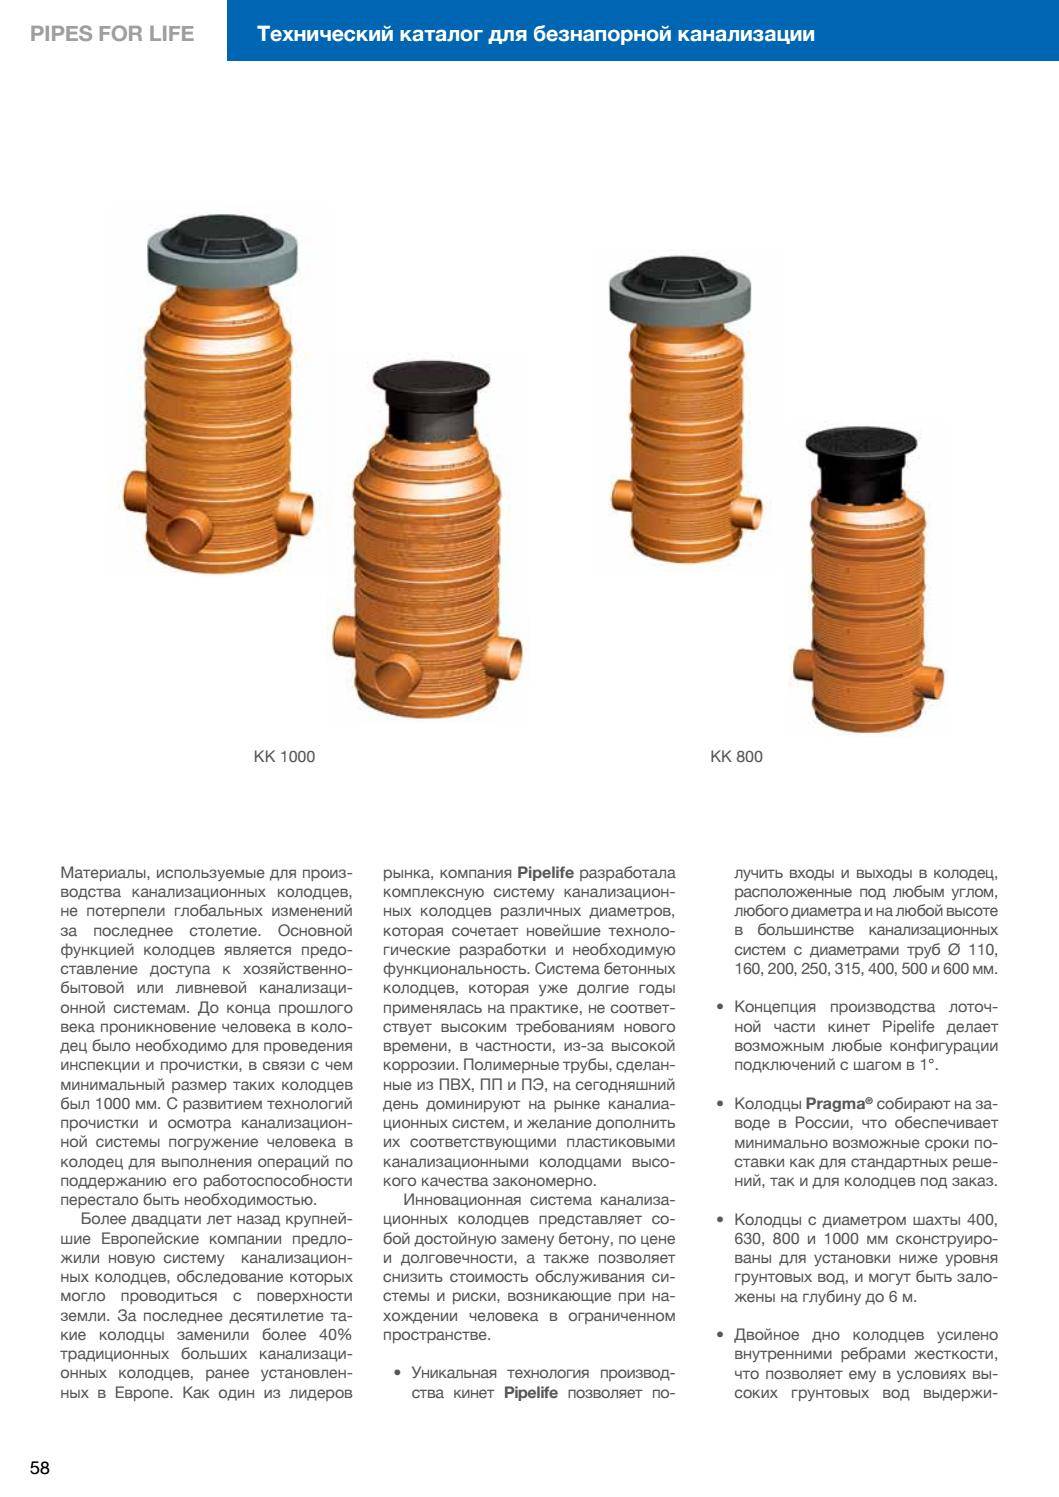 Полипропиленовые трубы для канализации — виды, особенности, применение